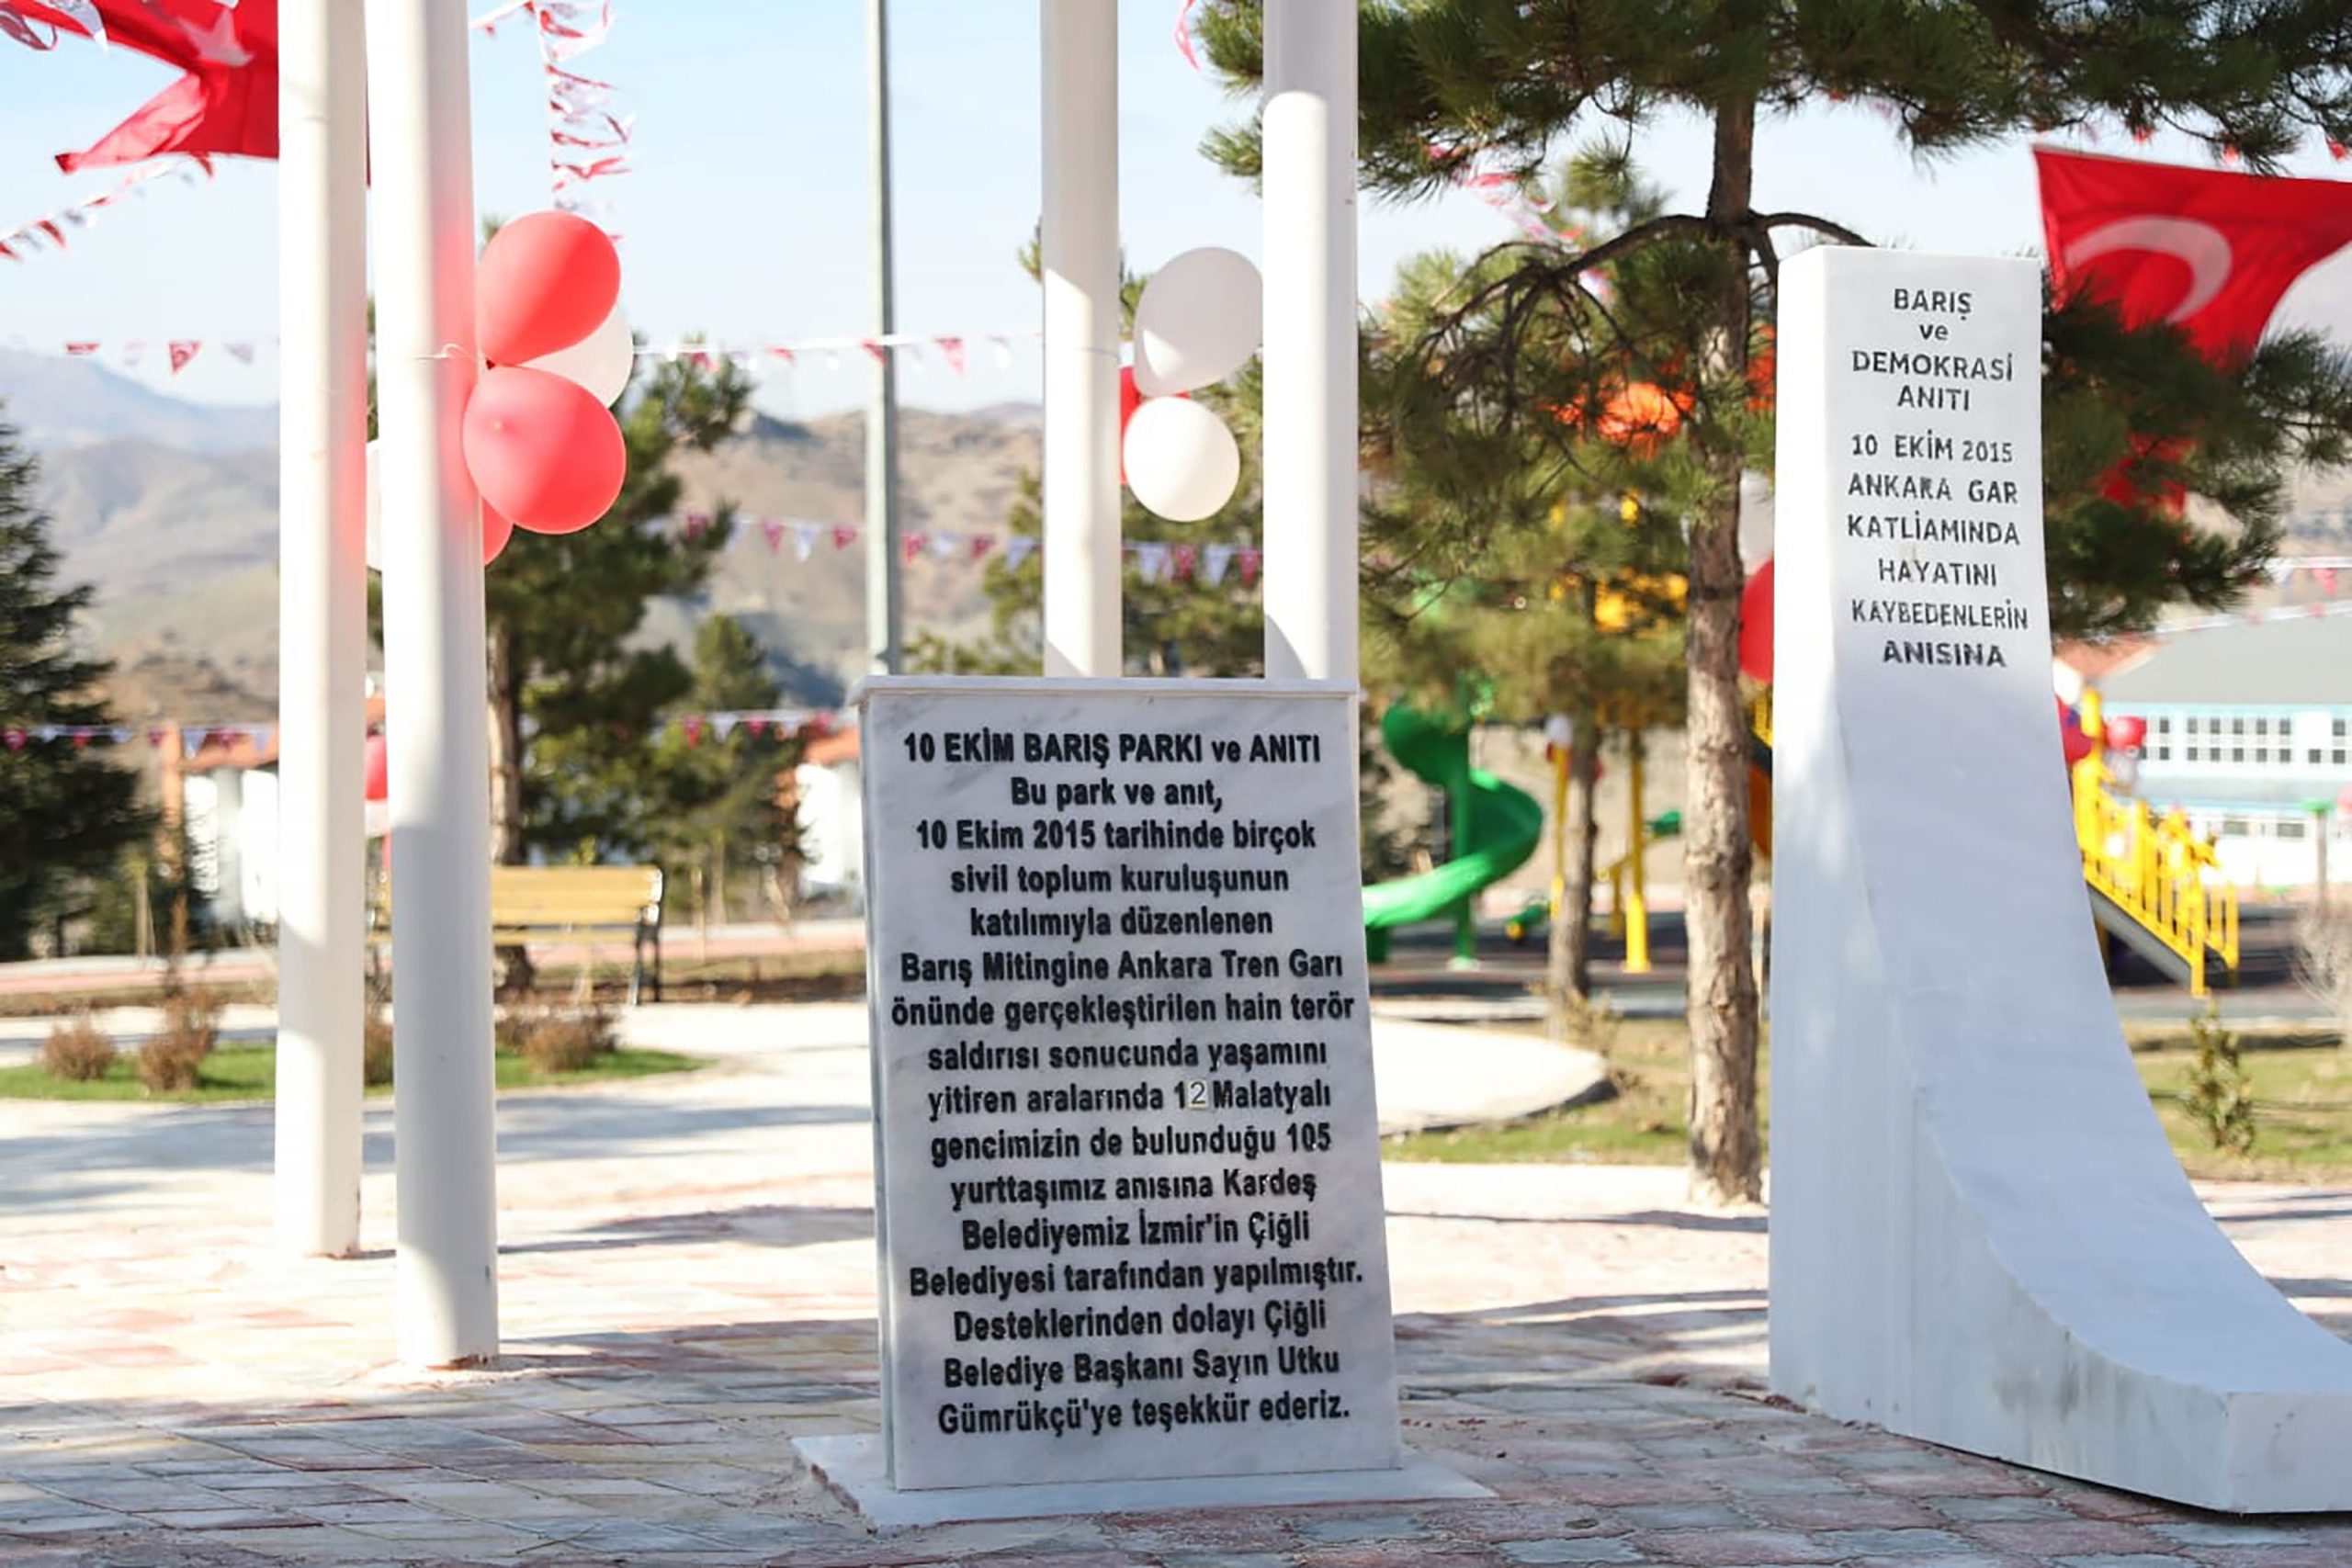 Çiğli Belediyesi “Barış Güvercinlerini” Malatya’da Yaşatacak